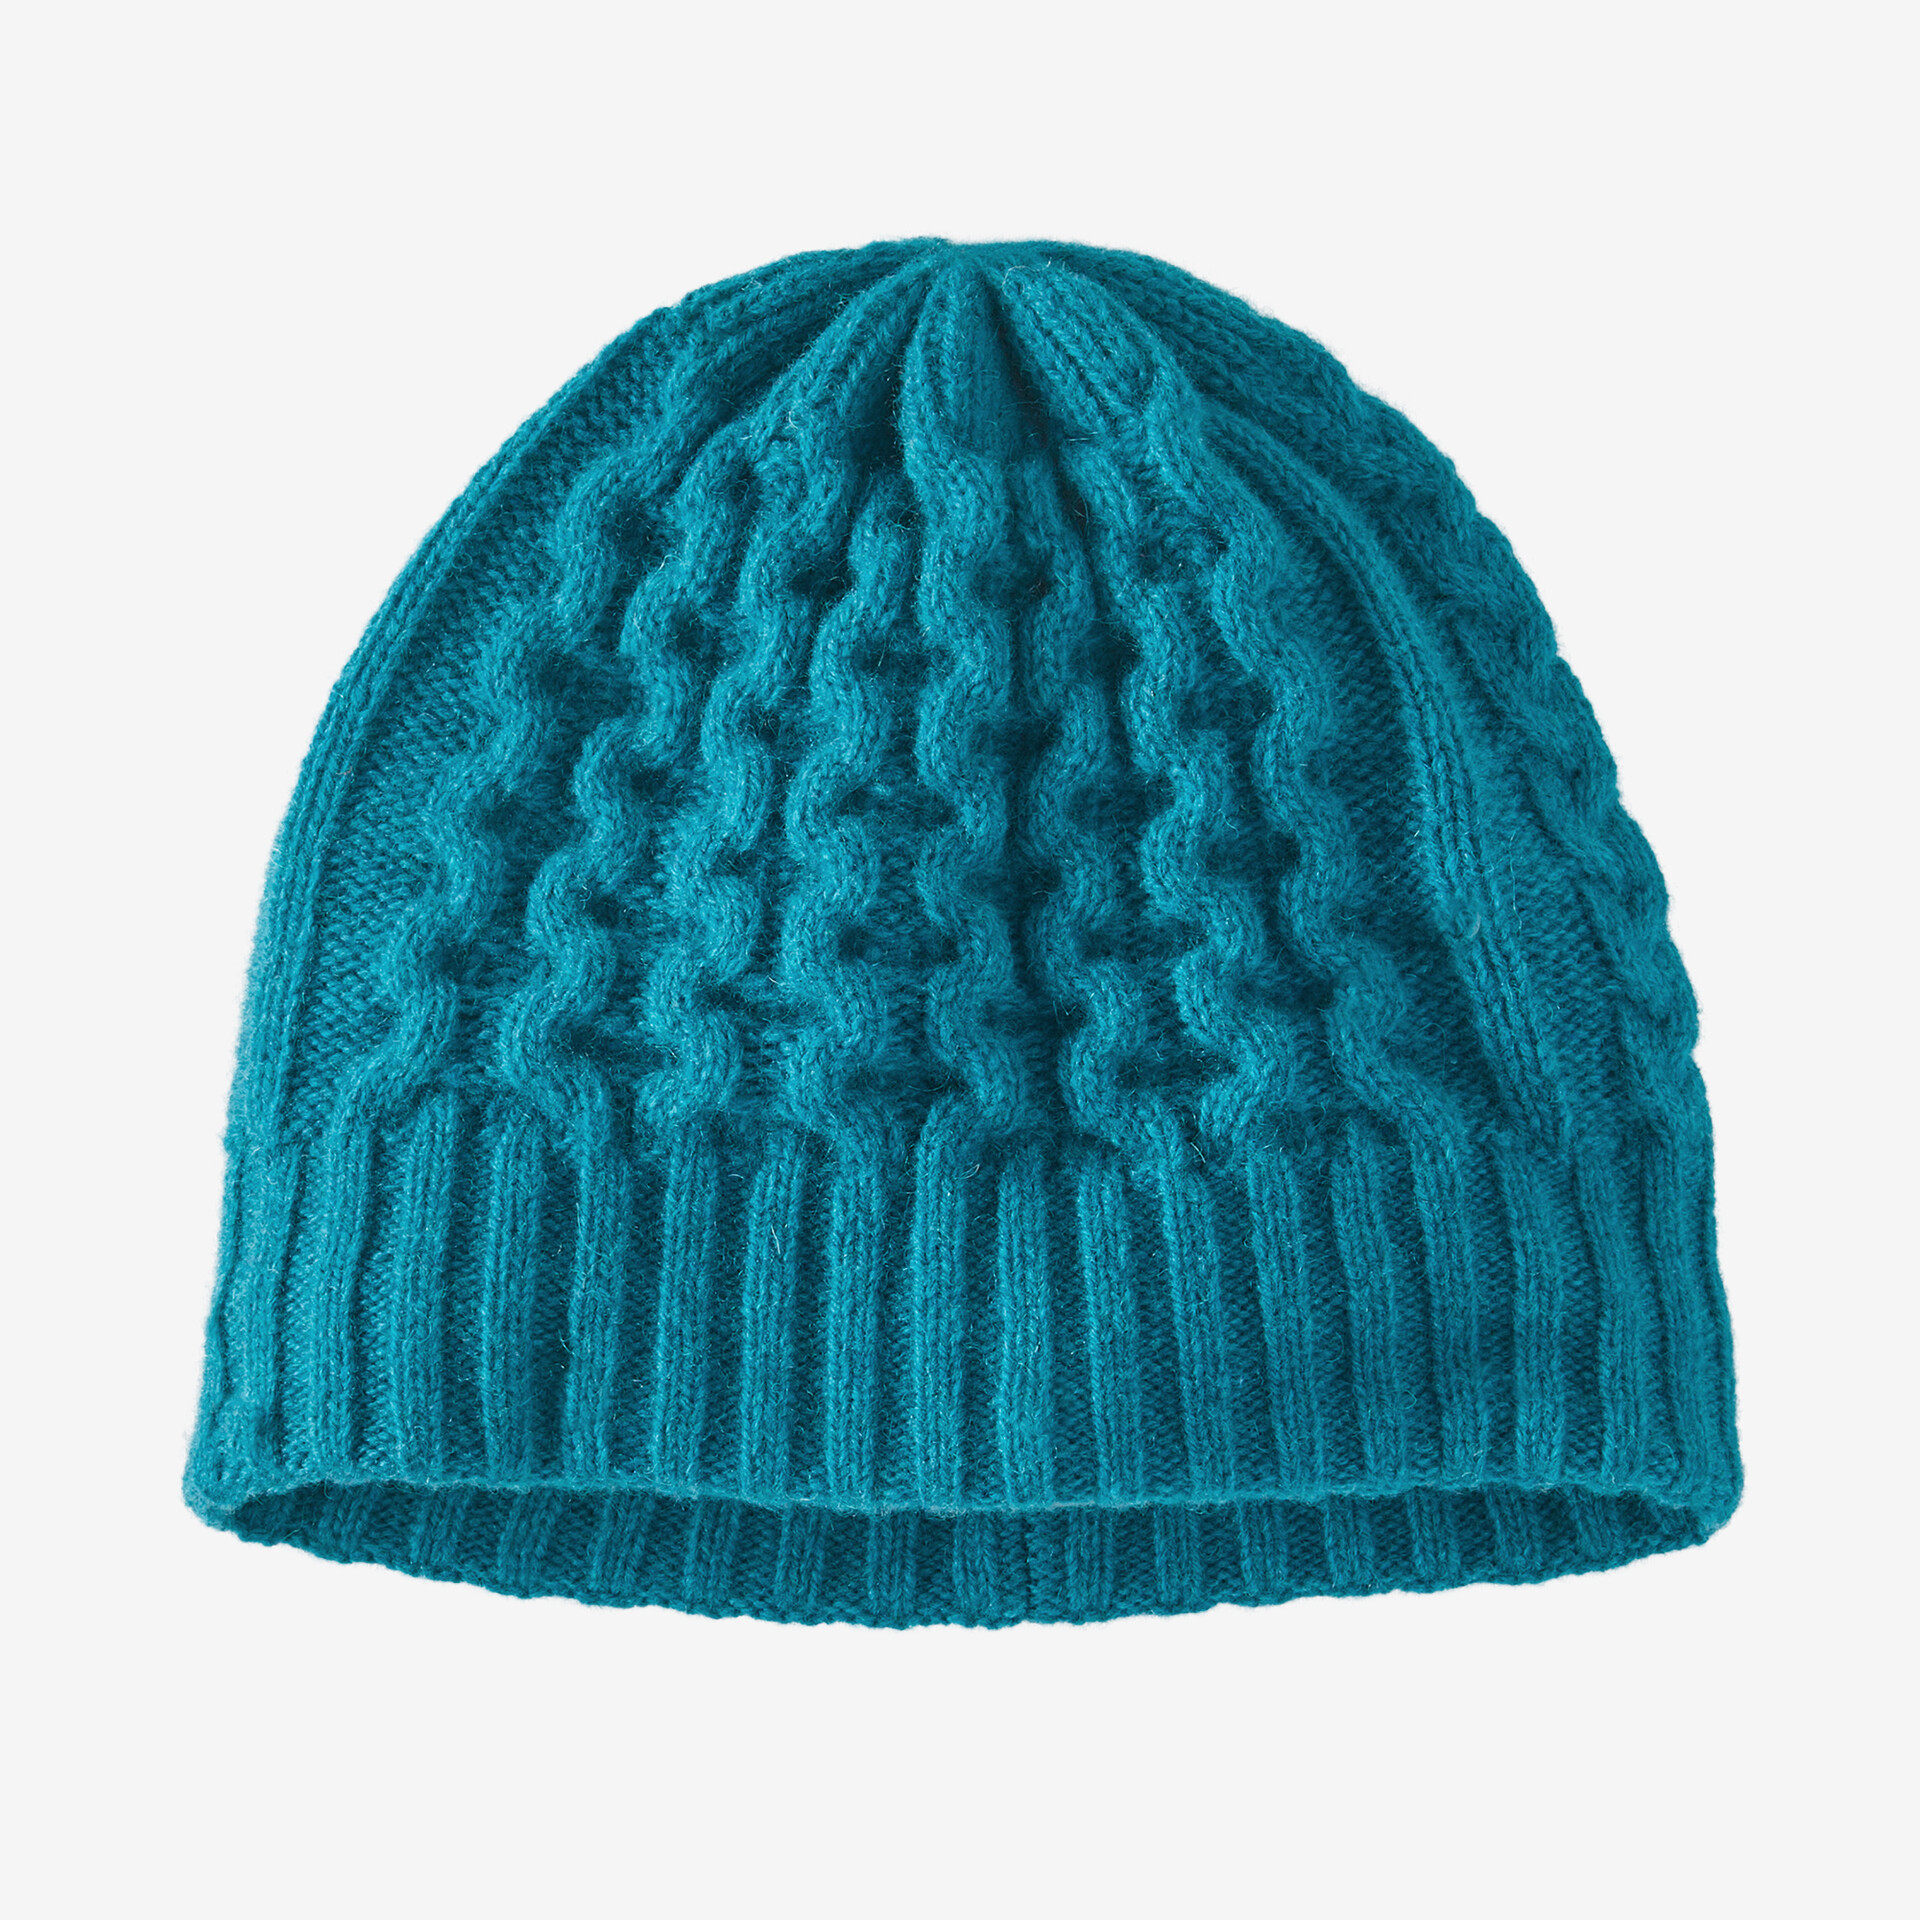 Прибрежная вязаная шапка Patagonia, синий удобная солнцезащитная шляпа ветрозащитная сетчатая летняя спортивная шапка шарф с повязкой на голову бейсболка велосипедная шапочка